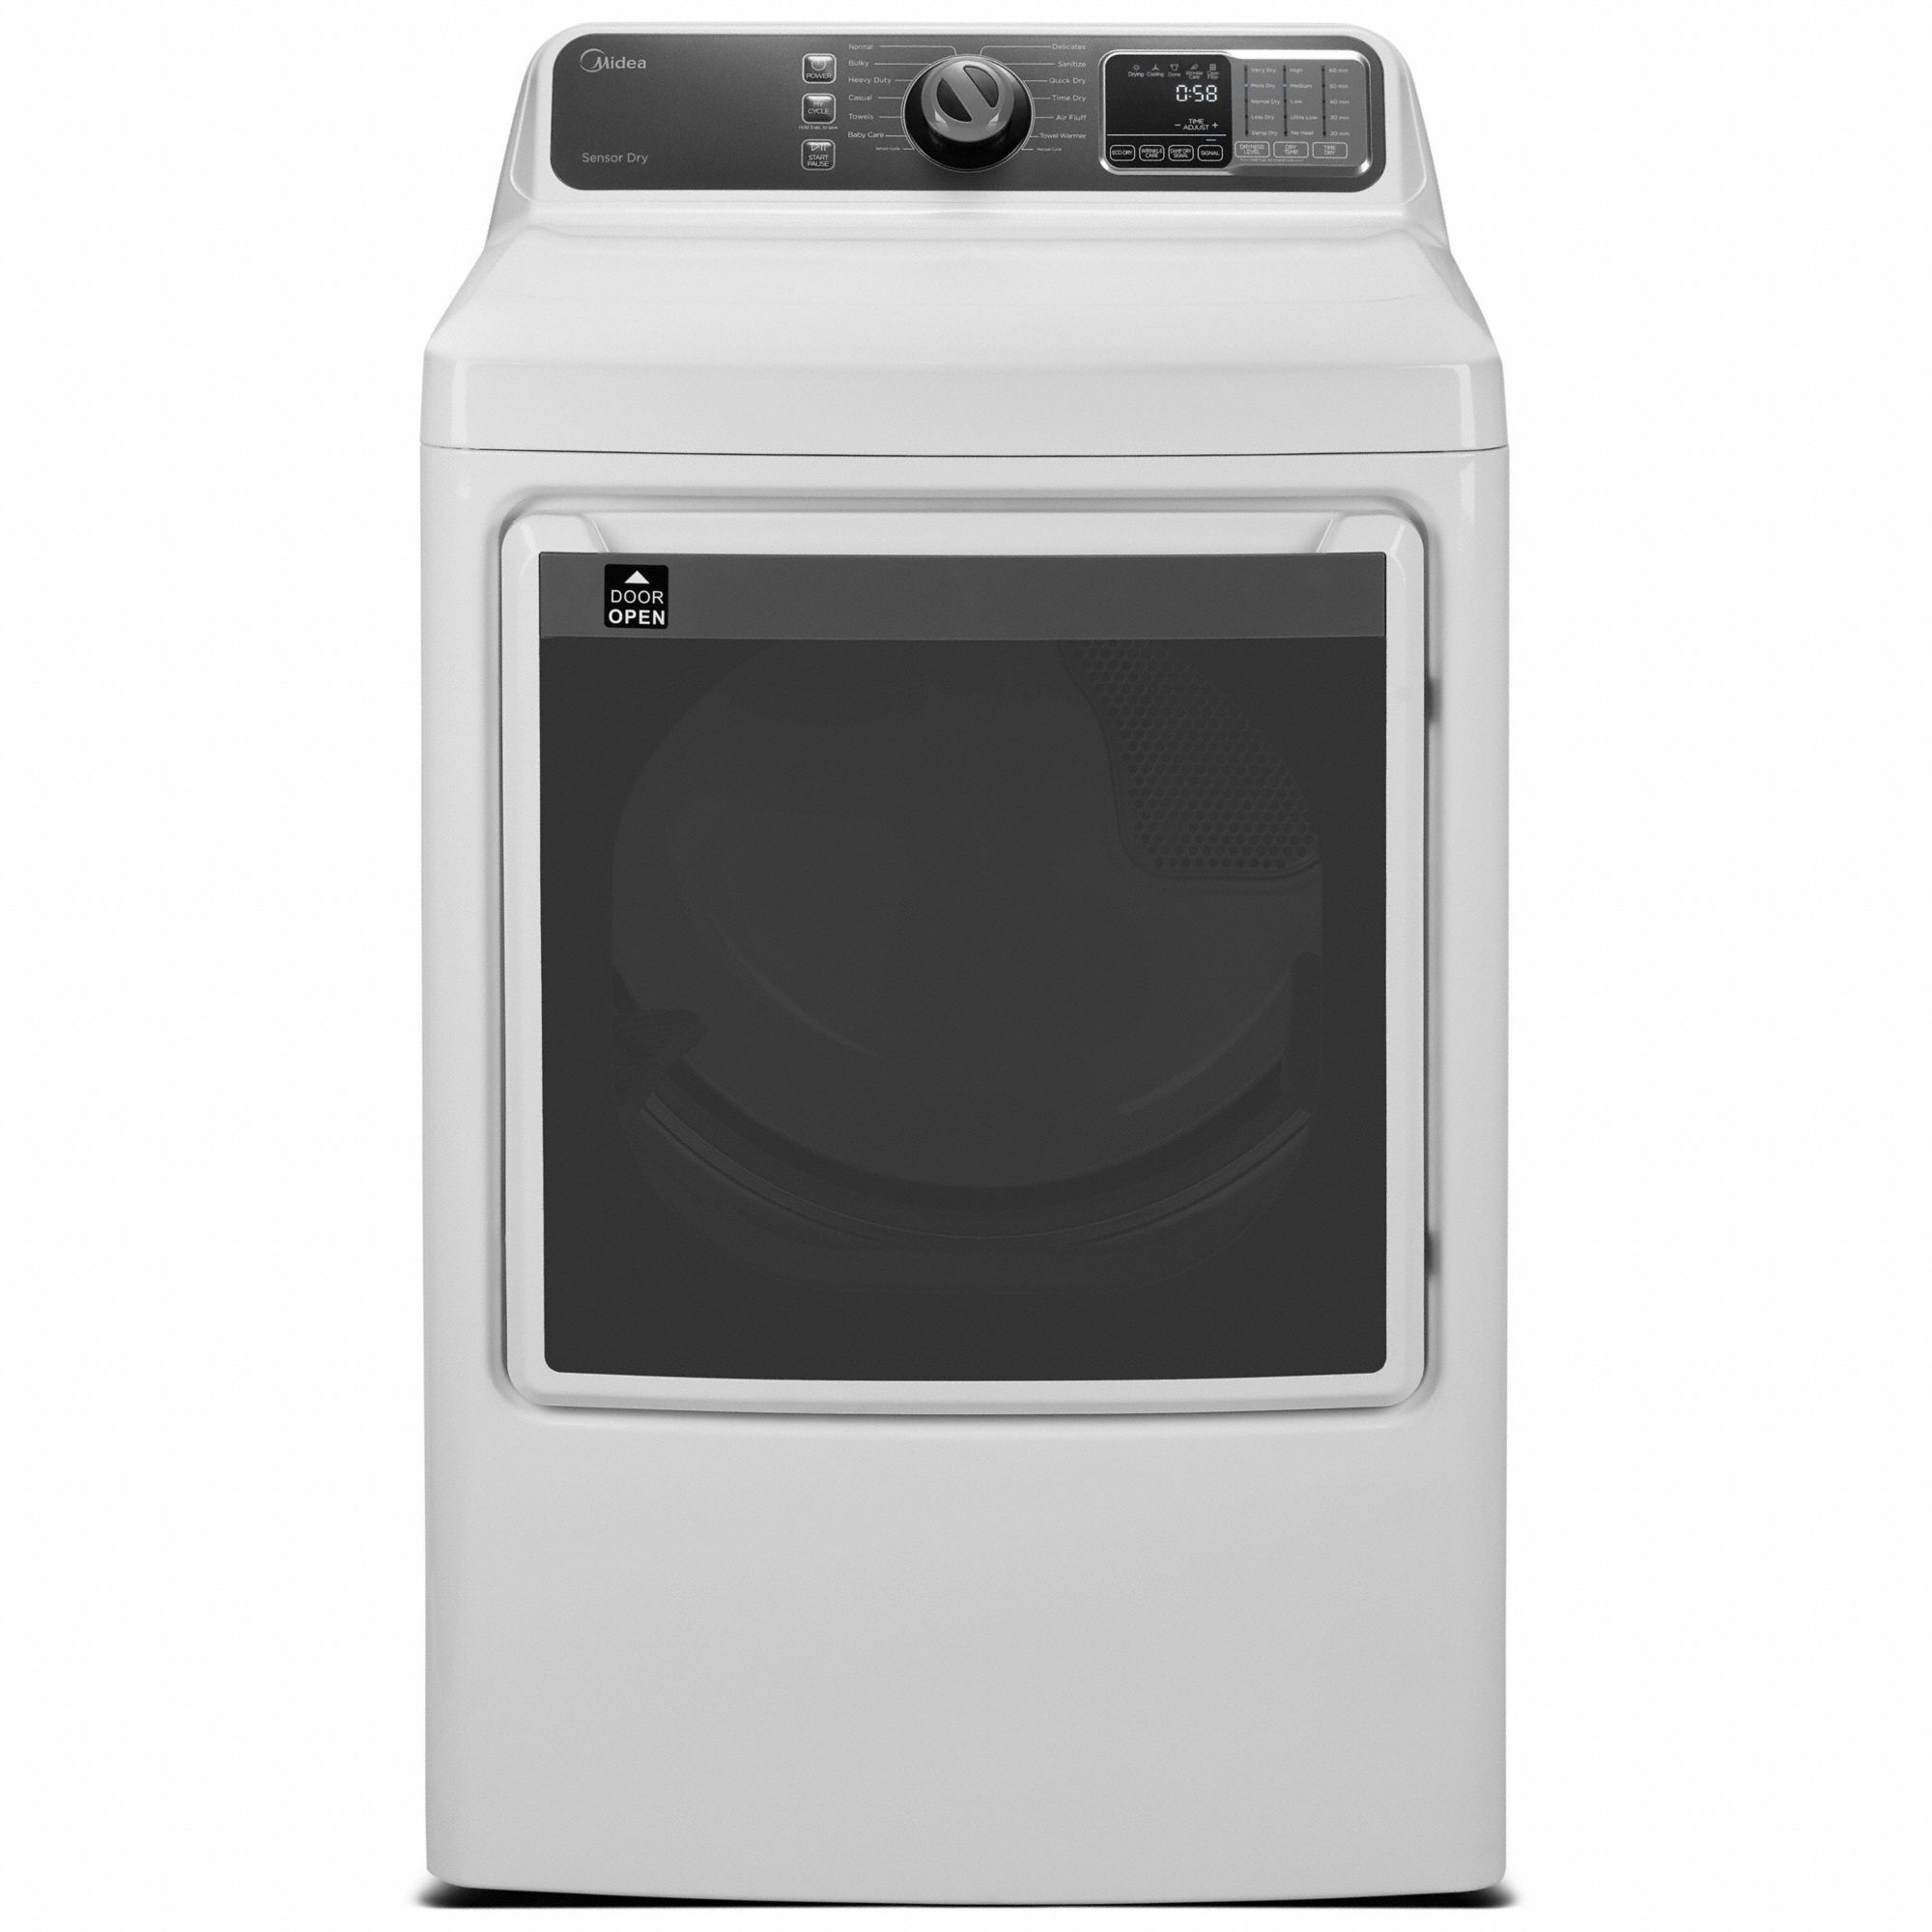 Dryer: Electric, White, 7.5 cu ft Capacity, 52 in Dp with Door Open